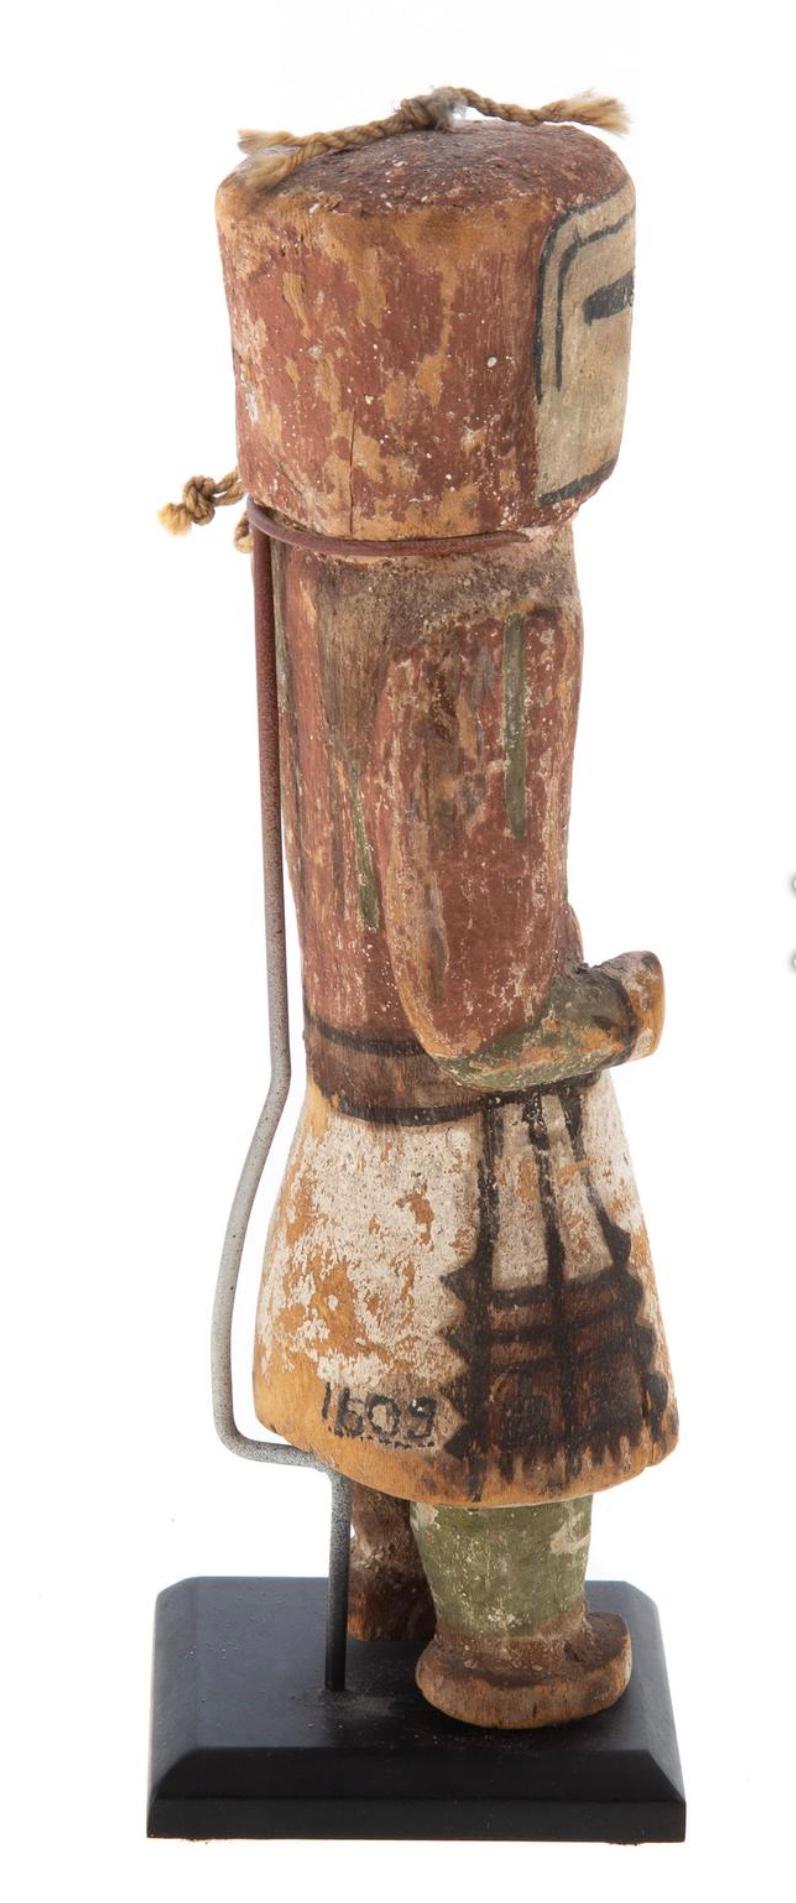 hopi-Puppe aus dem 19. Jahrhundert, geschnitzt als Kachina.
Um 1900: Pappelholz mit irdenen Pigmenten, 7 3/8 Zoll. H., mit einem Ständer. Inventarnummer der Sammlung auf der Rückseite des Rocks.